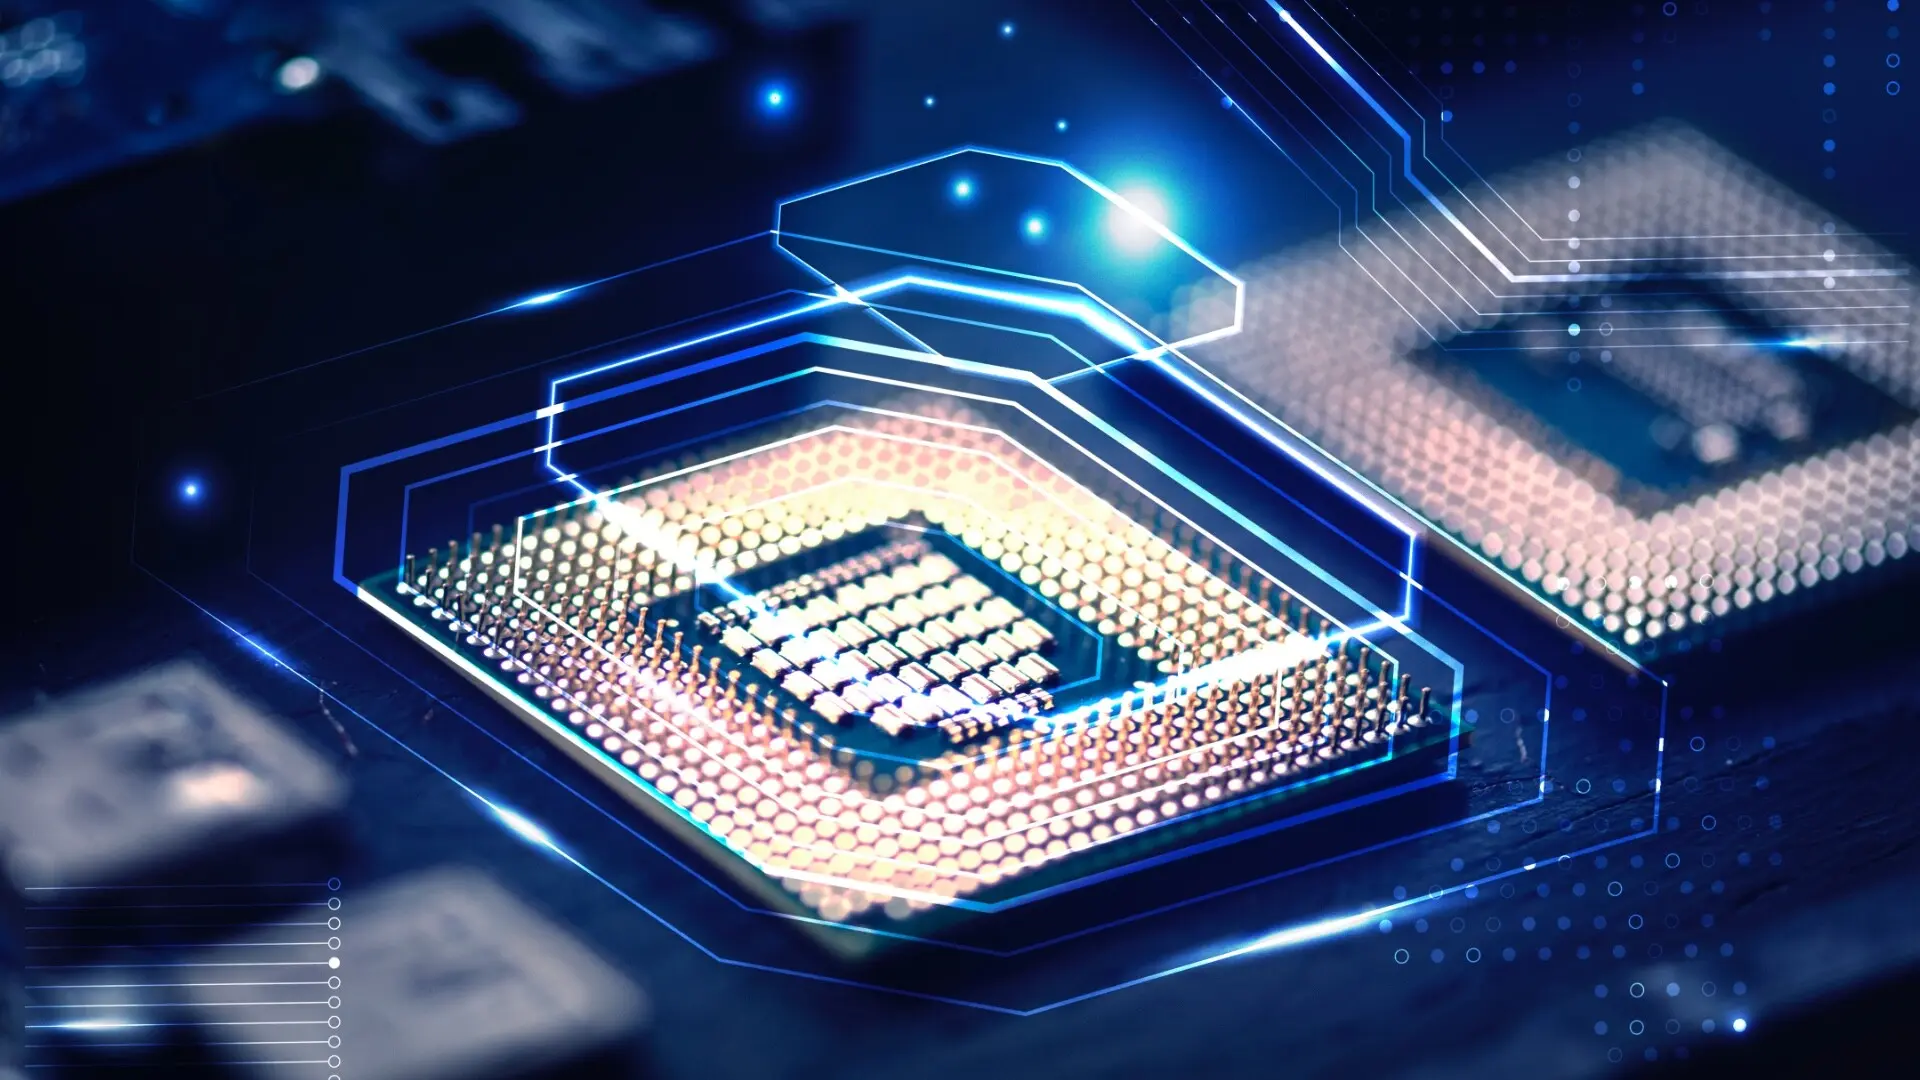 Przełom czy wyścig gigantów? TSMC vs Intel w bitwie o dominację w technologii nanochipów